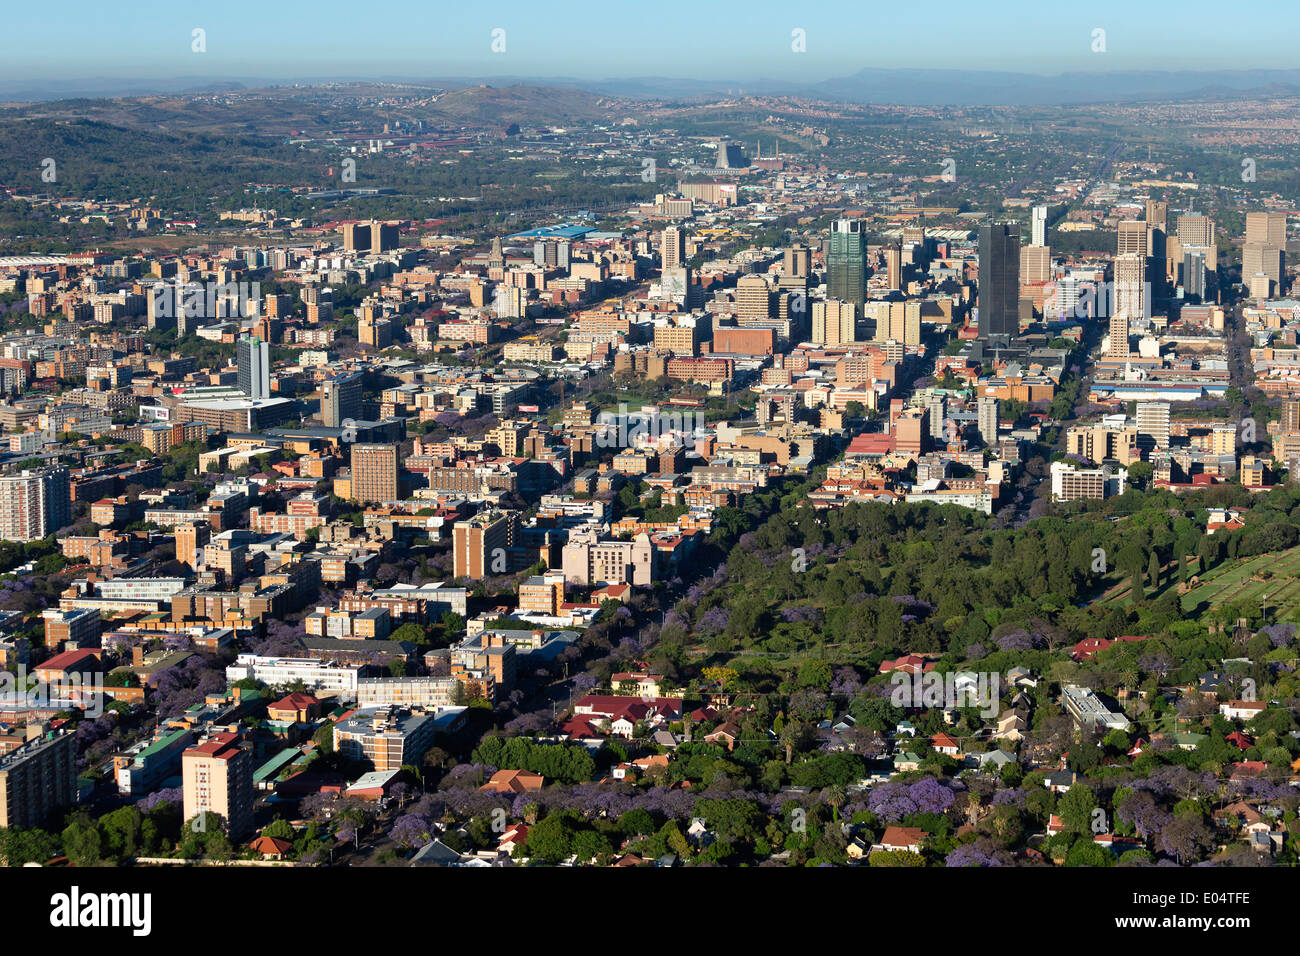 Luftbild von Pretoria des zentralen Geschäftsviertels und der ikonischen Jacaranda-Bäume in voller Blüte. Pretoria.South Afrika Stockfoto